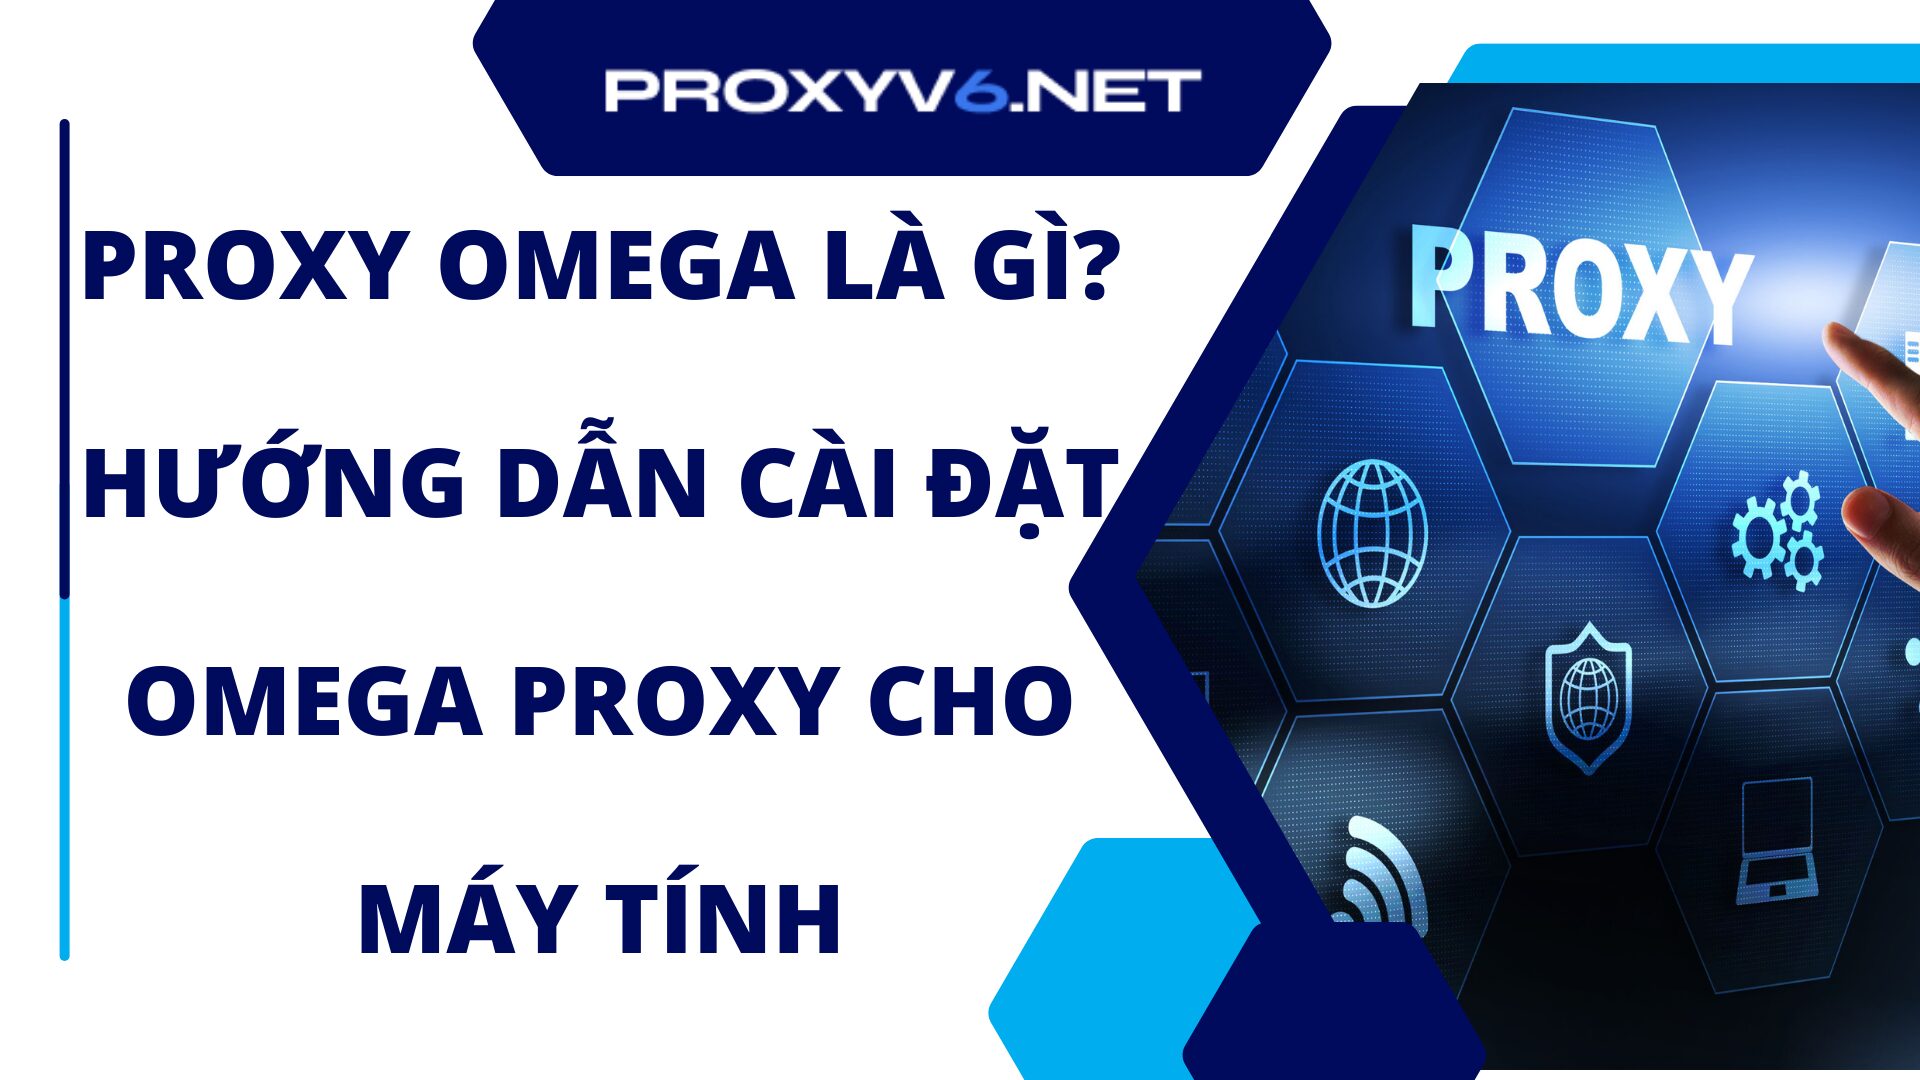 Proxy Omega là gì? Hướng dẫn cài đặt Omega Proxy cho máy tính